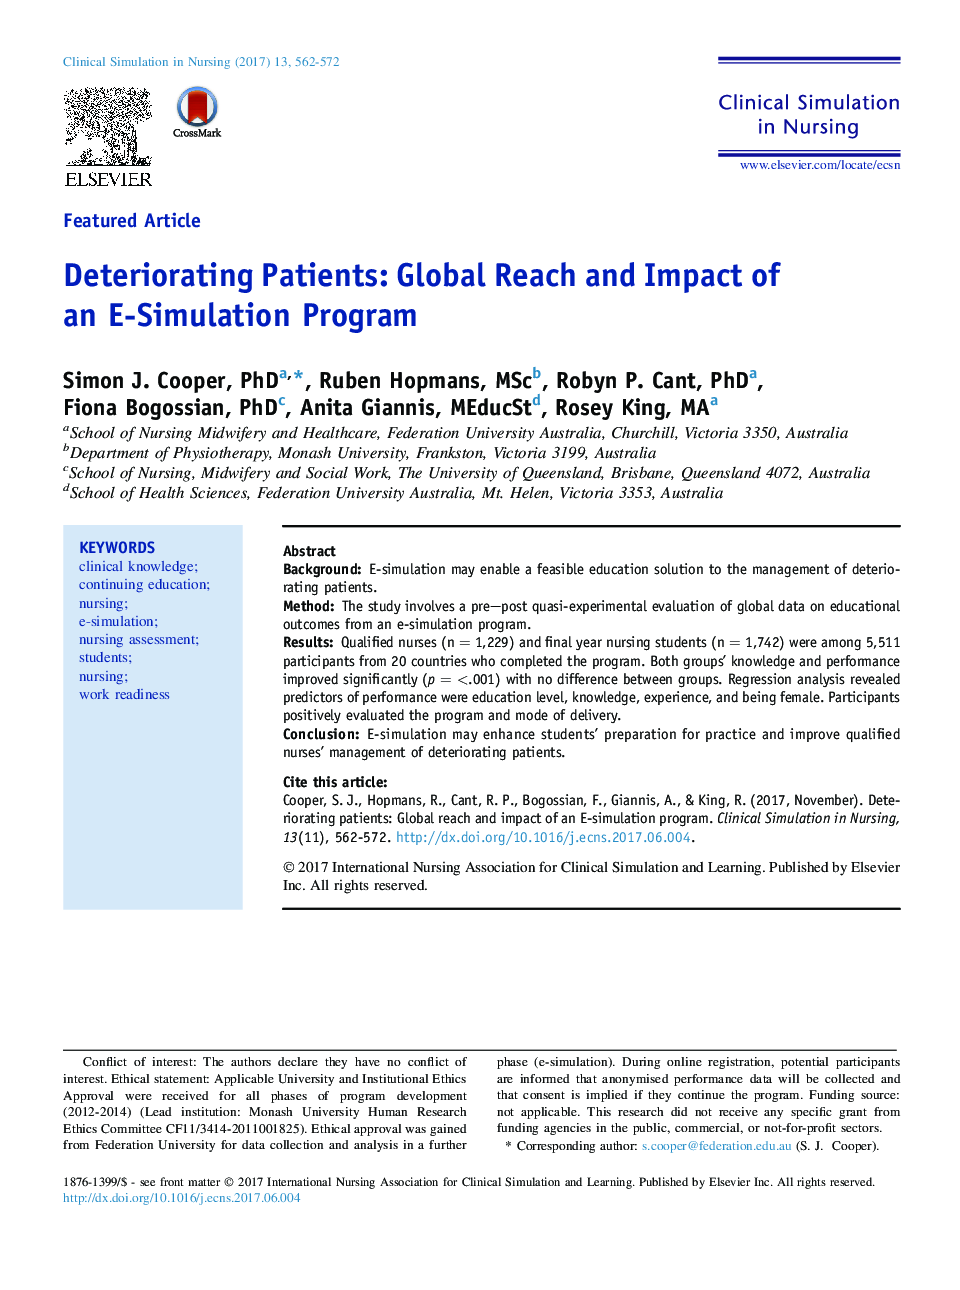 بیماران تضعیف: دسترسی جهانی و تاثیر یک برنامه شبیه سازی الکترونیکی 